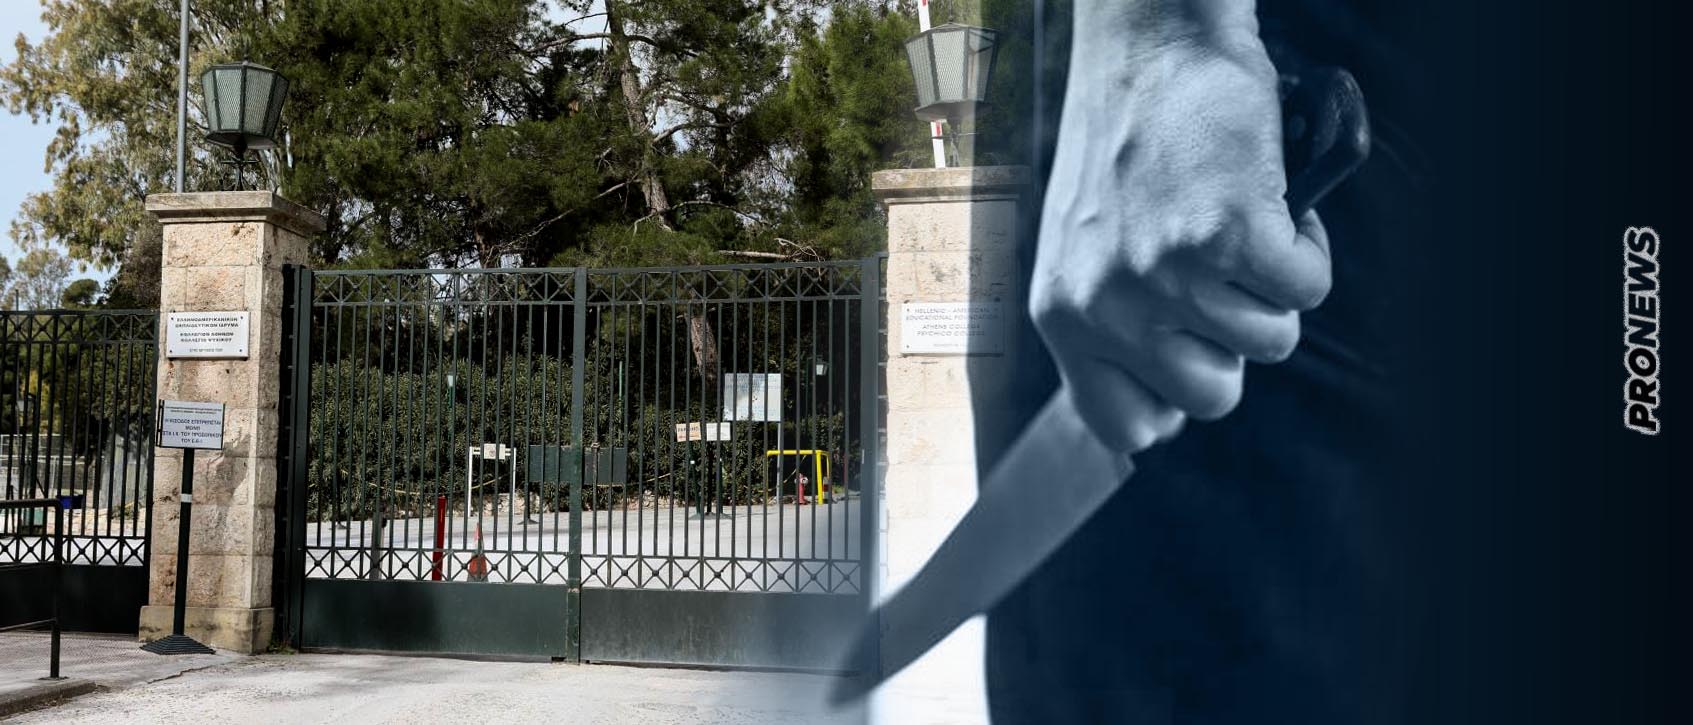 Συναγερμός στο Κολλέγιο Αθηνών – Αλβανοί εισέβαλαν με μαχαίρια